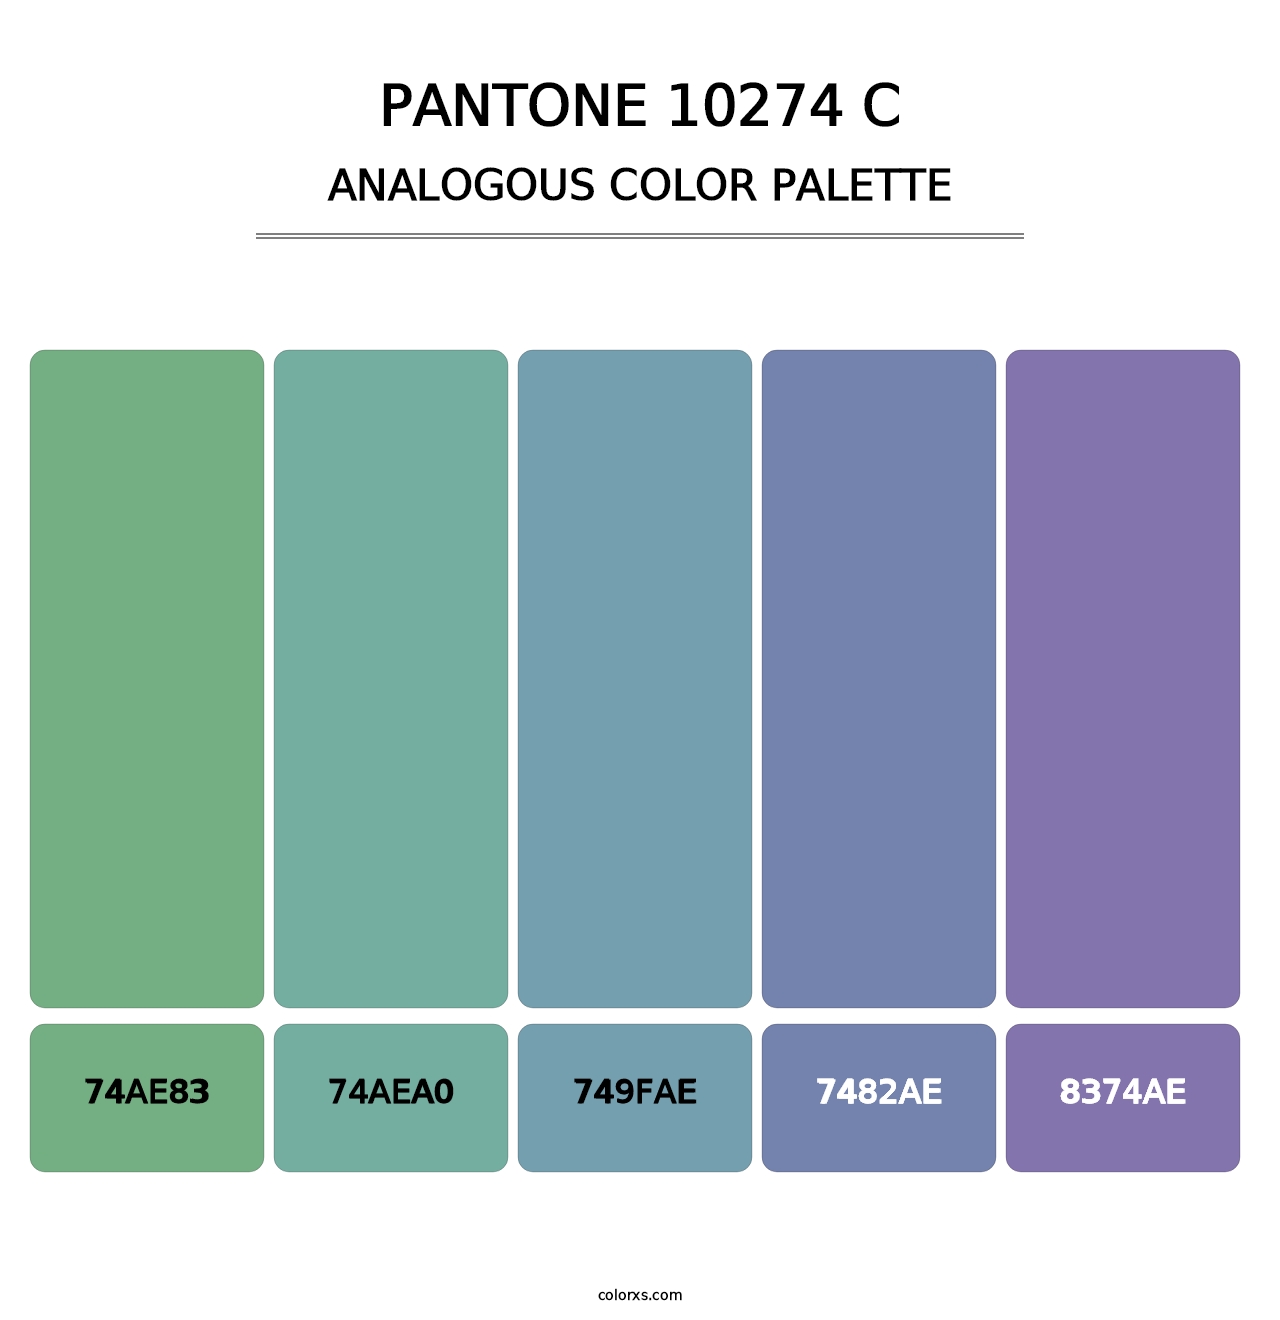 PANTONE 10274 C - Analogous Color Palette